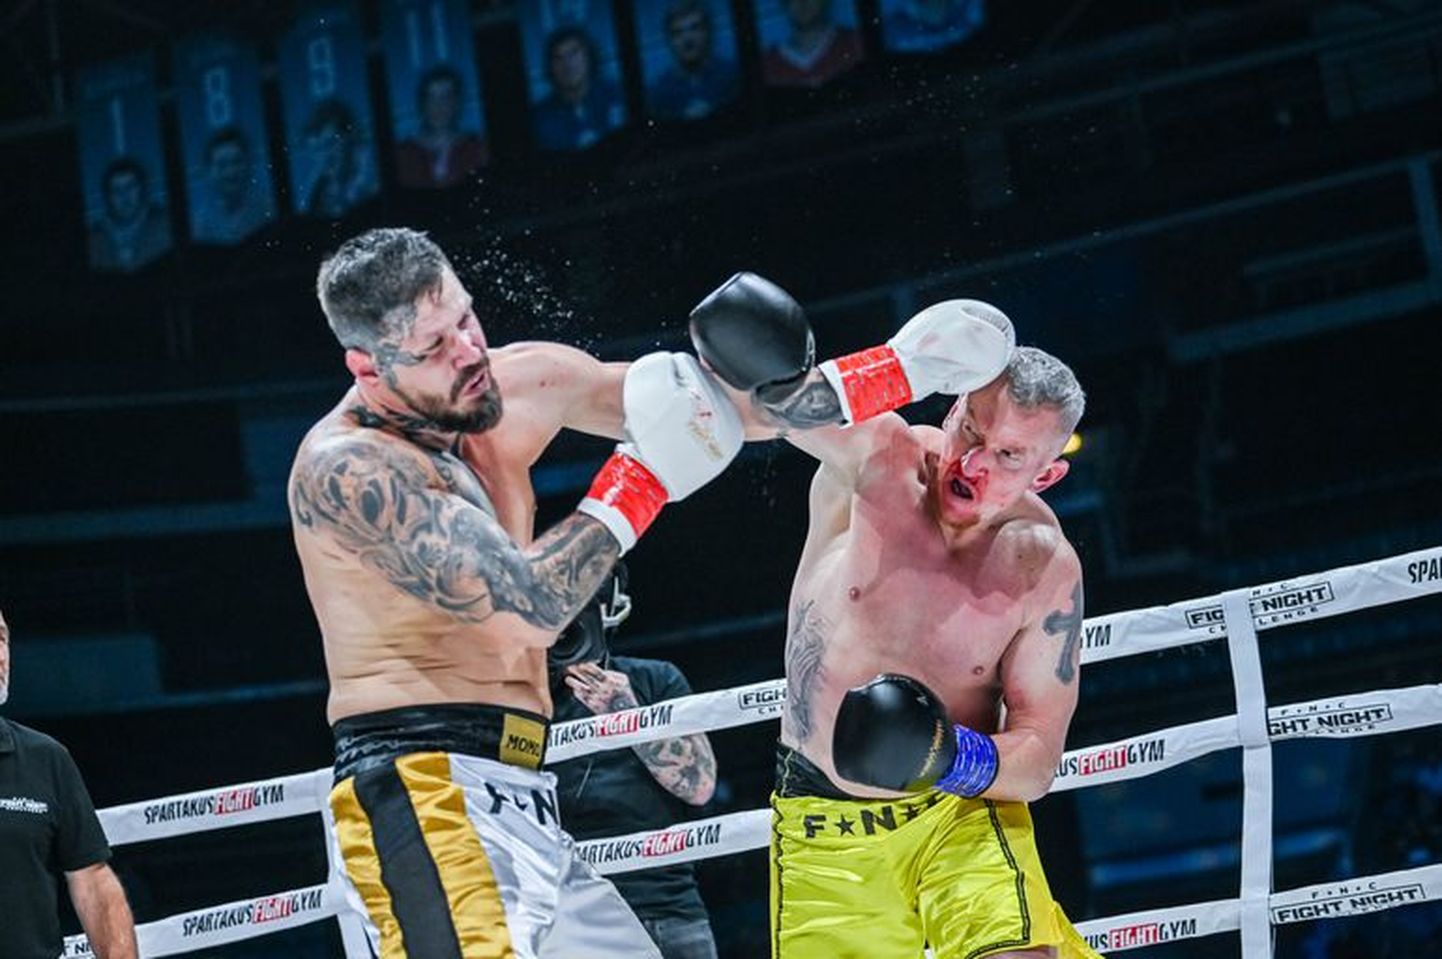 Легендарный нападающий рижского "Динамо" Марцел Госса (справа) дебютировал в профессиональном боксе